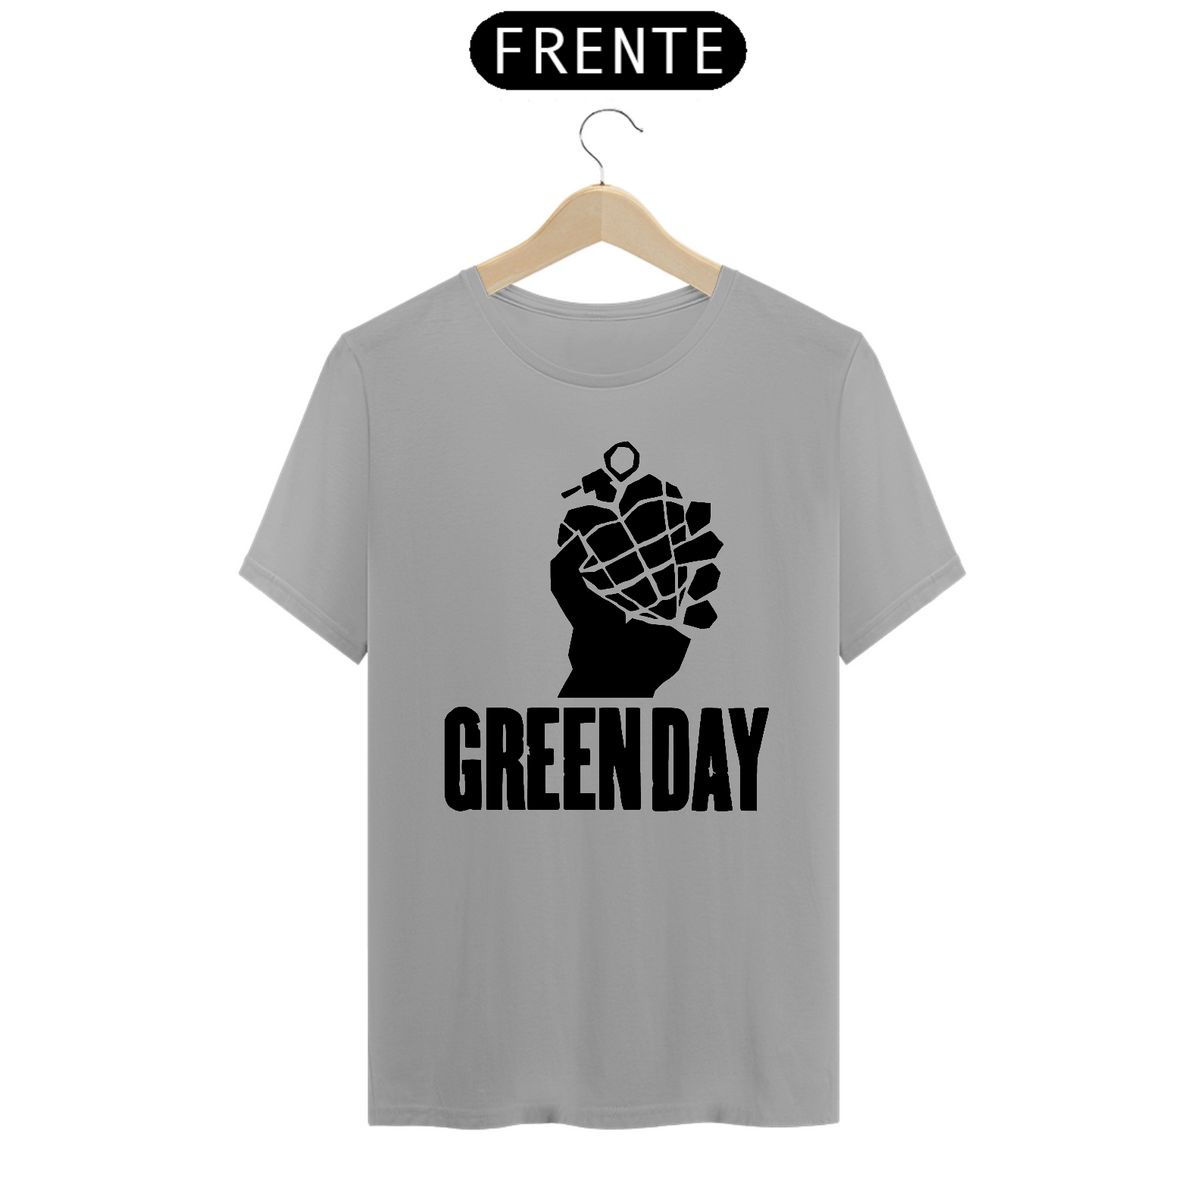 Nome do produto: Green Day